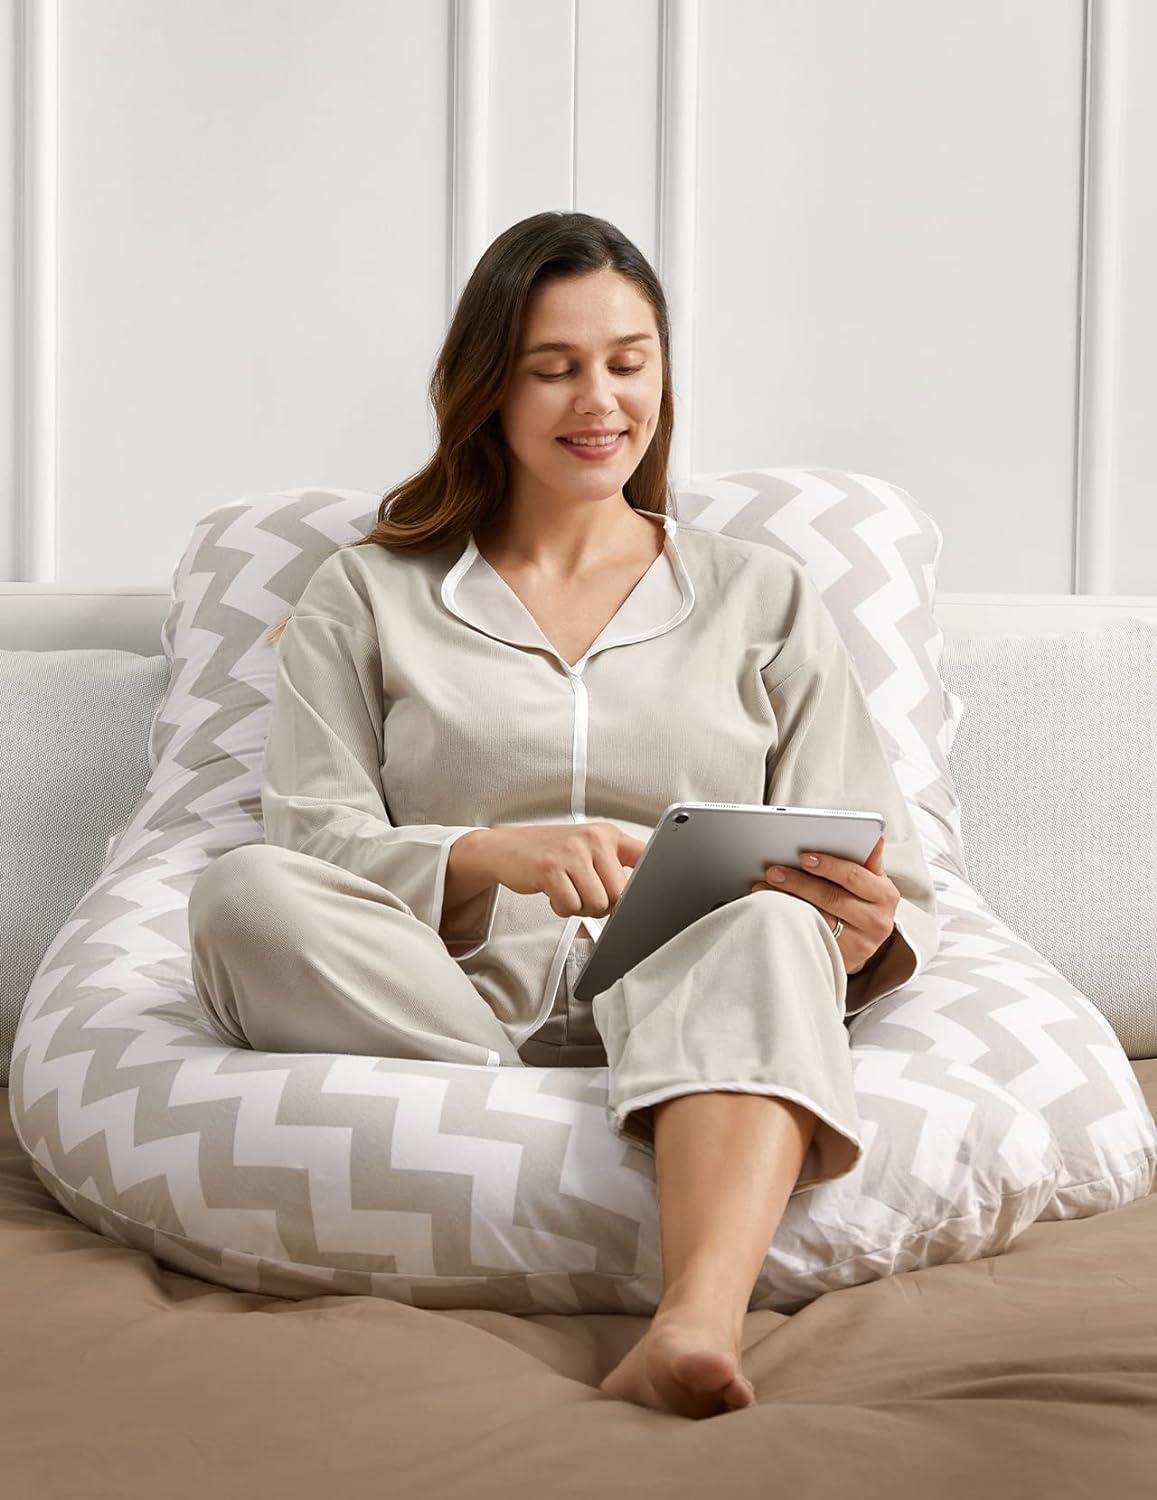  Momcozy Pregnancy Pillows for Sleeping, Portable